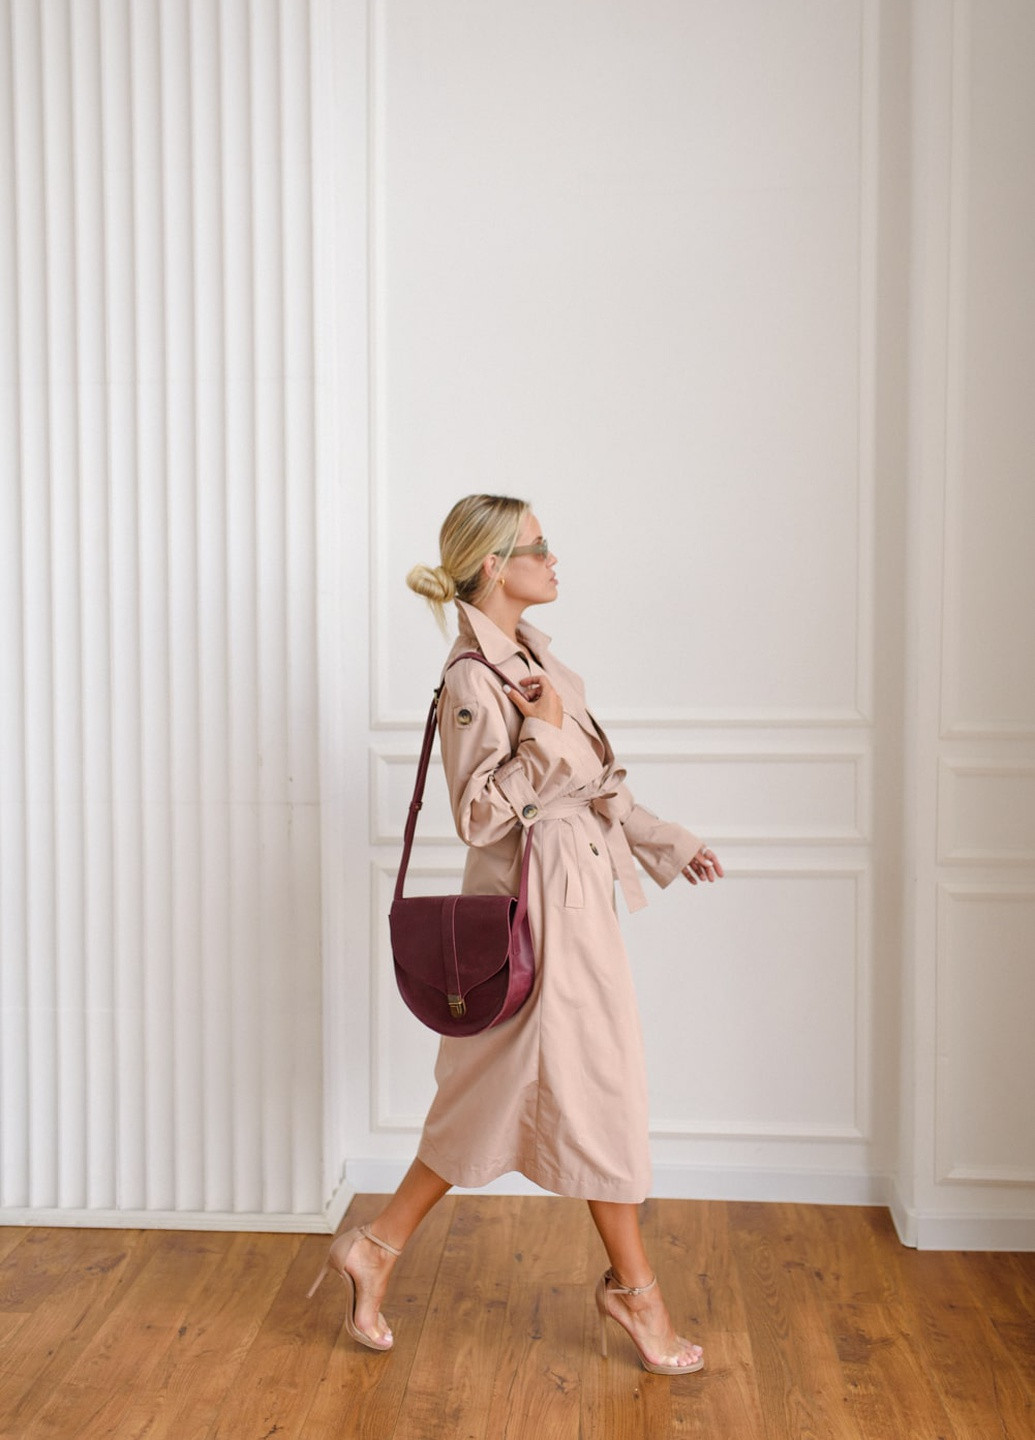 Женская полукруглая сумка через плечо ручной работы из винтажной натуральной кожи коньячного цвета Boorbon (253342369)